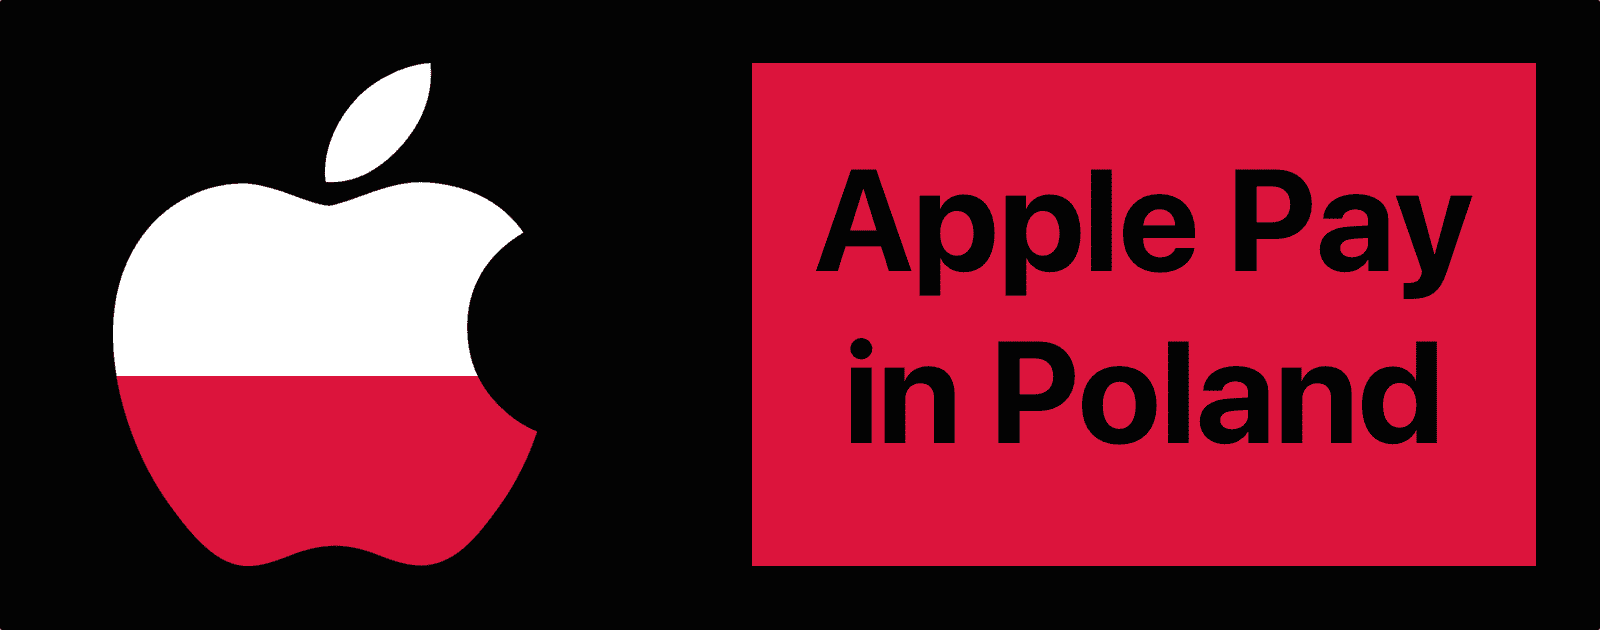 Polish Apple Pay Use Has Already Skyrocketed